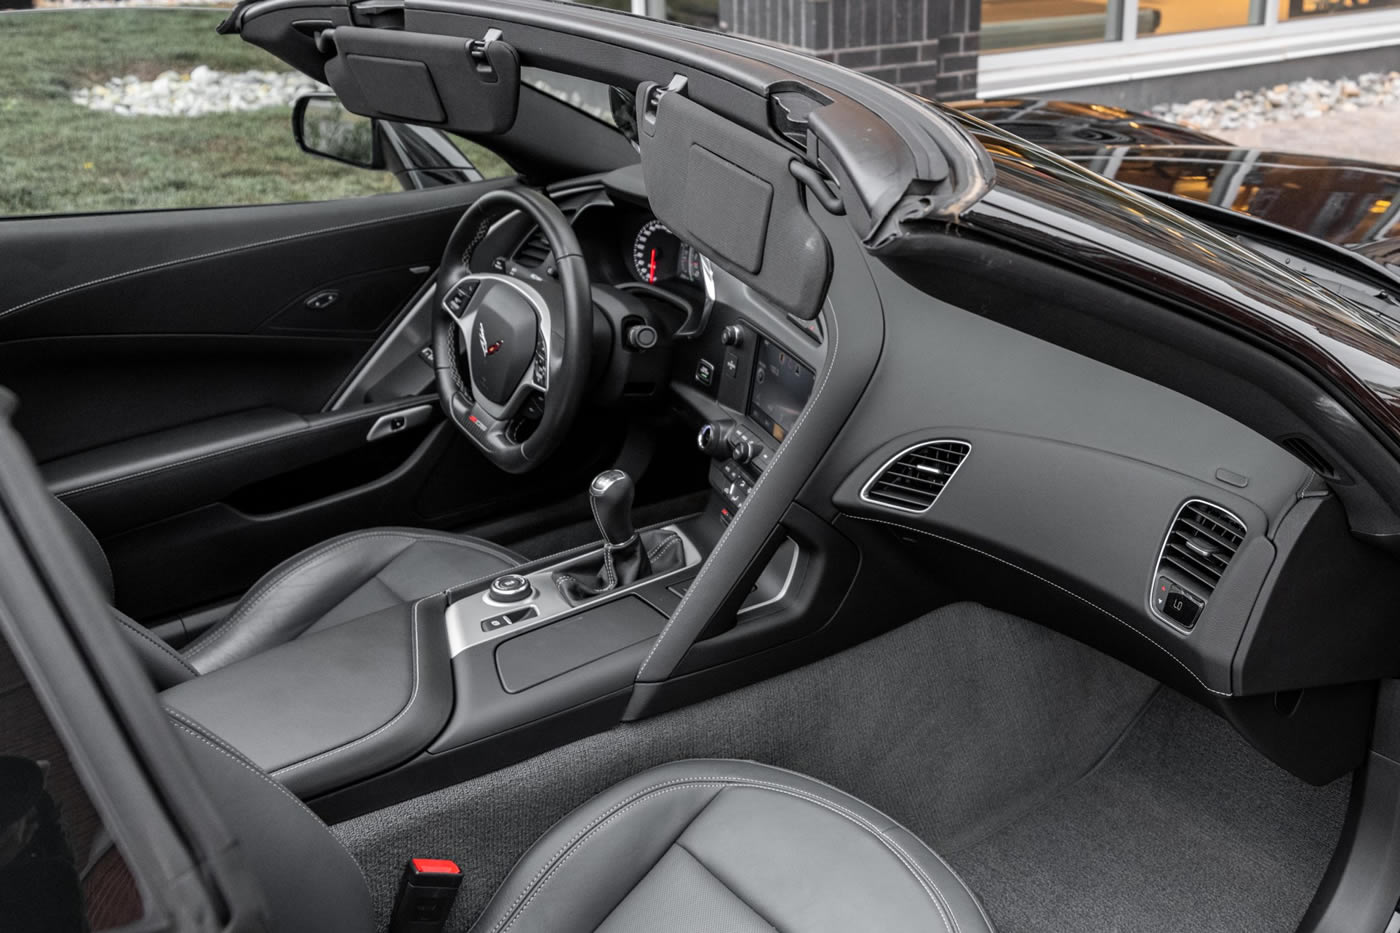 2015 Corvette Z06 Coupe in Black